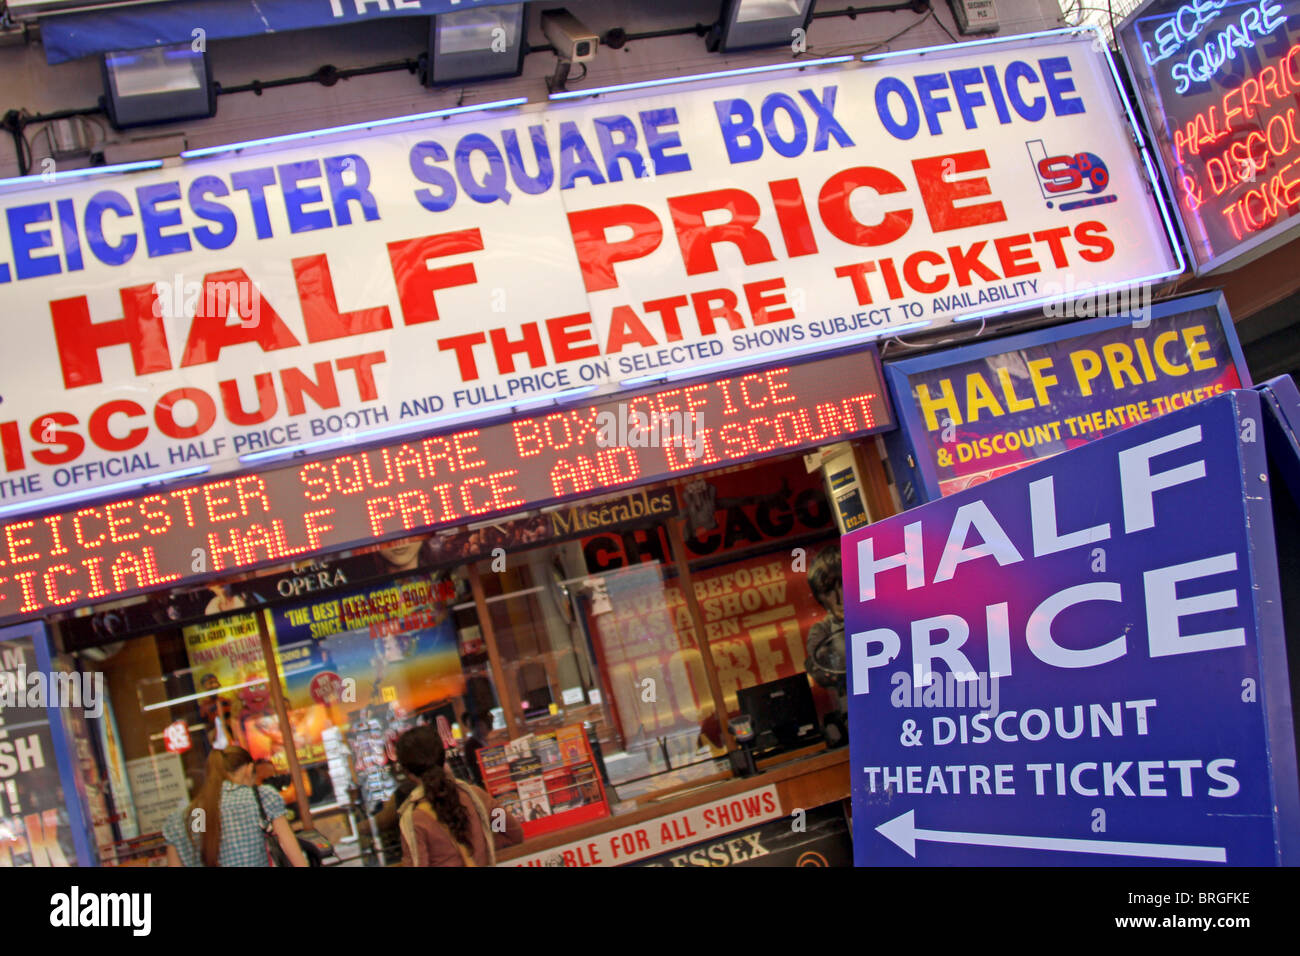 Leicester Square Box Office, moitié prix et discount theatre ticket, Londres, Angleterre Banque D'Images